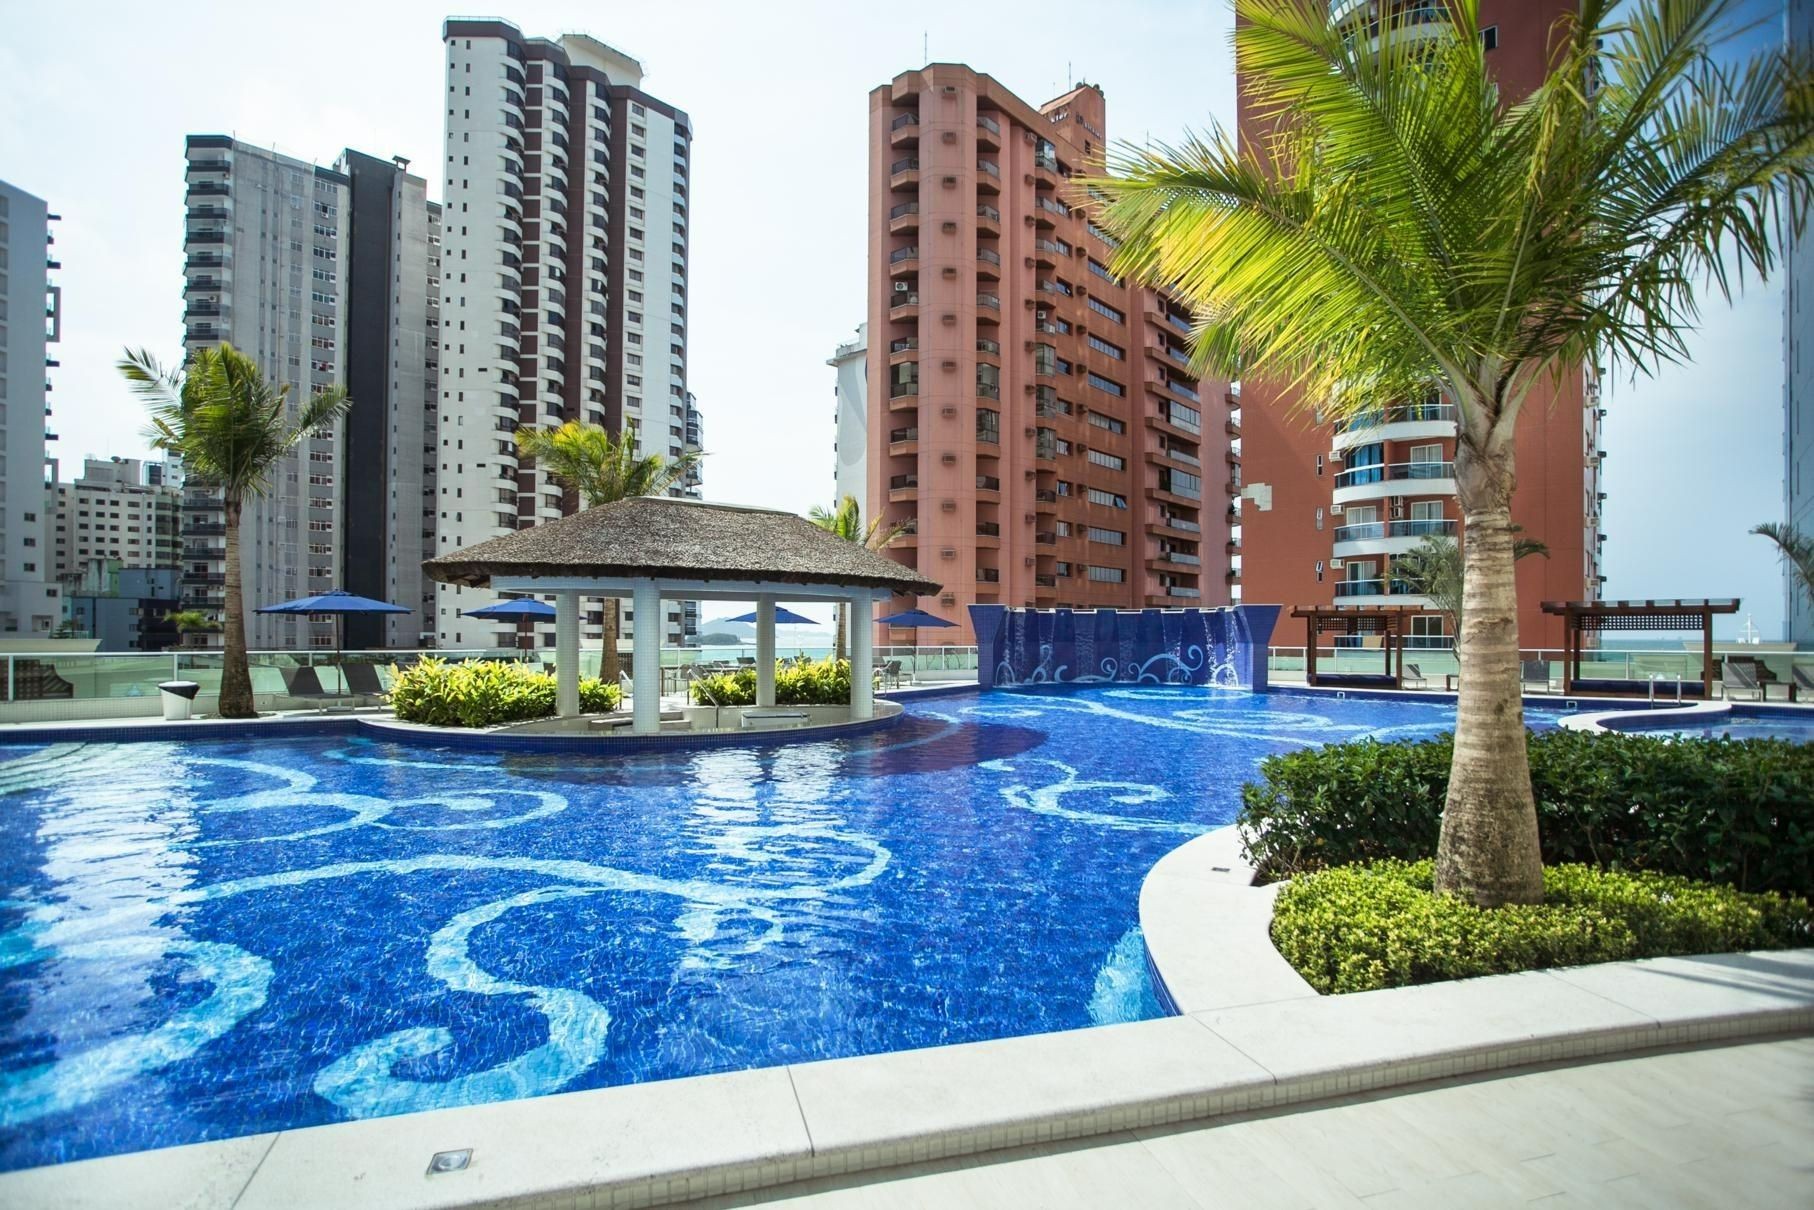 Excelente Apartamento Vista Mar Finamente Decorado, Mobiliado e Equipado Localizado Em Balneário Camboriú - SC